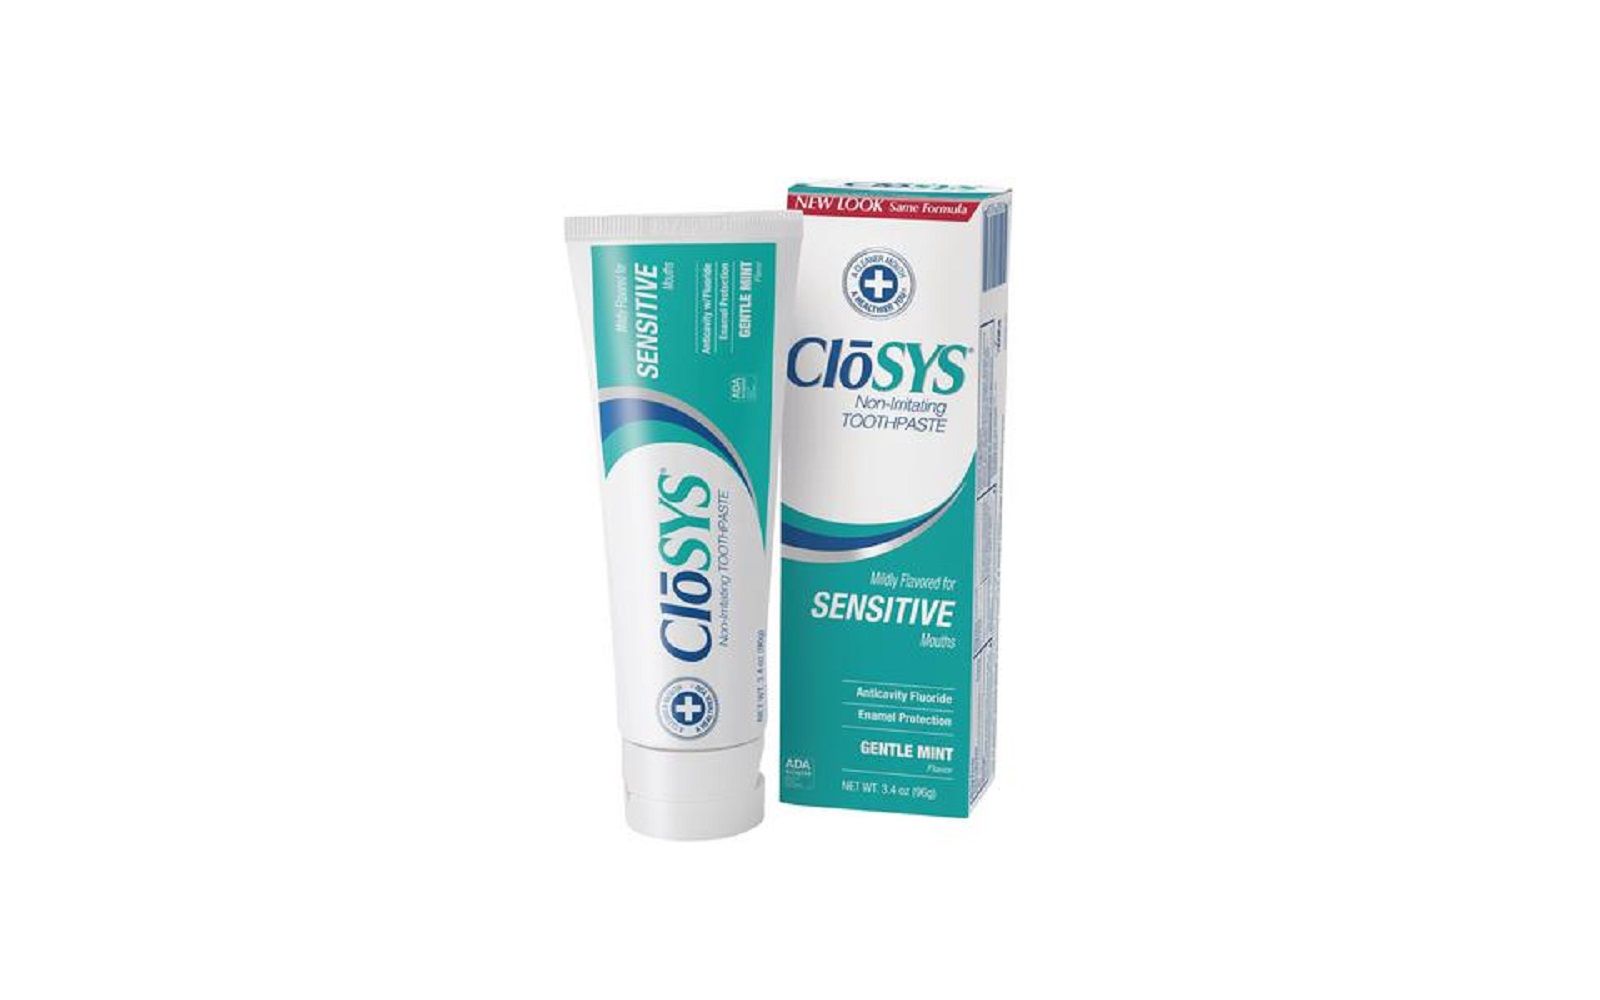 Closys® toothpaste - rowpar pharmaceuticals